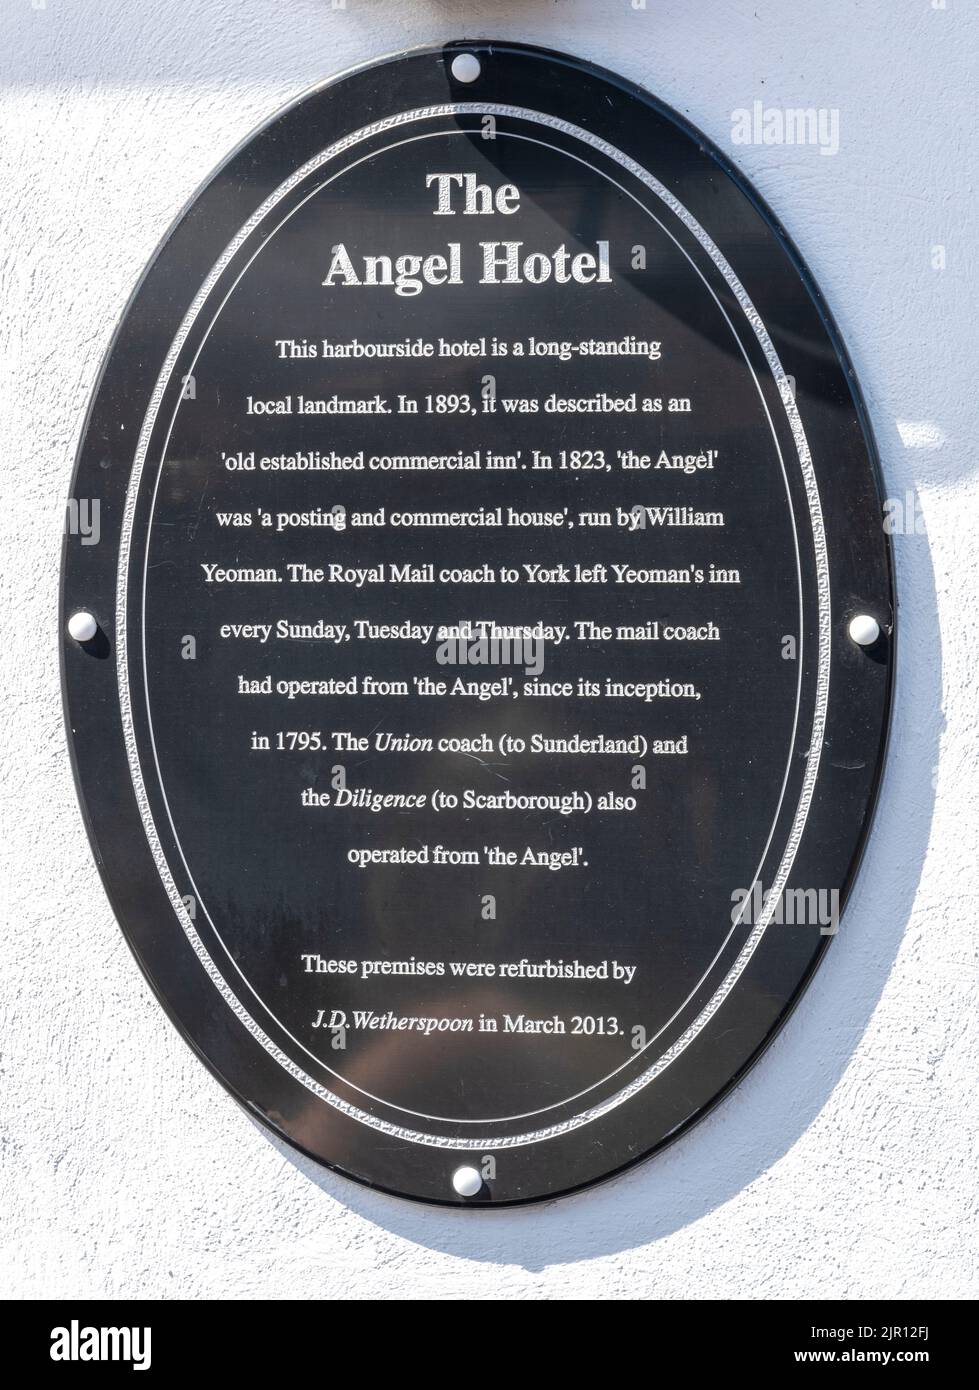 Plaque du patrimoine à l'Angel Hotel - Maison publique de Wetherspoon - New Quay Road, Whitby, North Yorkshire, Yorkshire, Angleterre, ROYAUME-UNI Banque D'Images